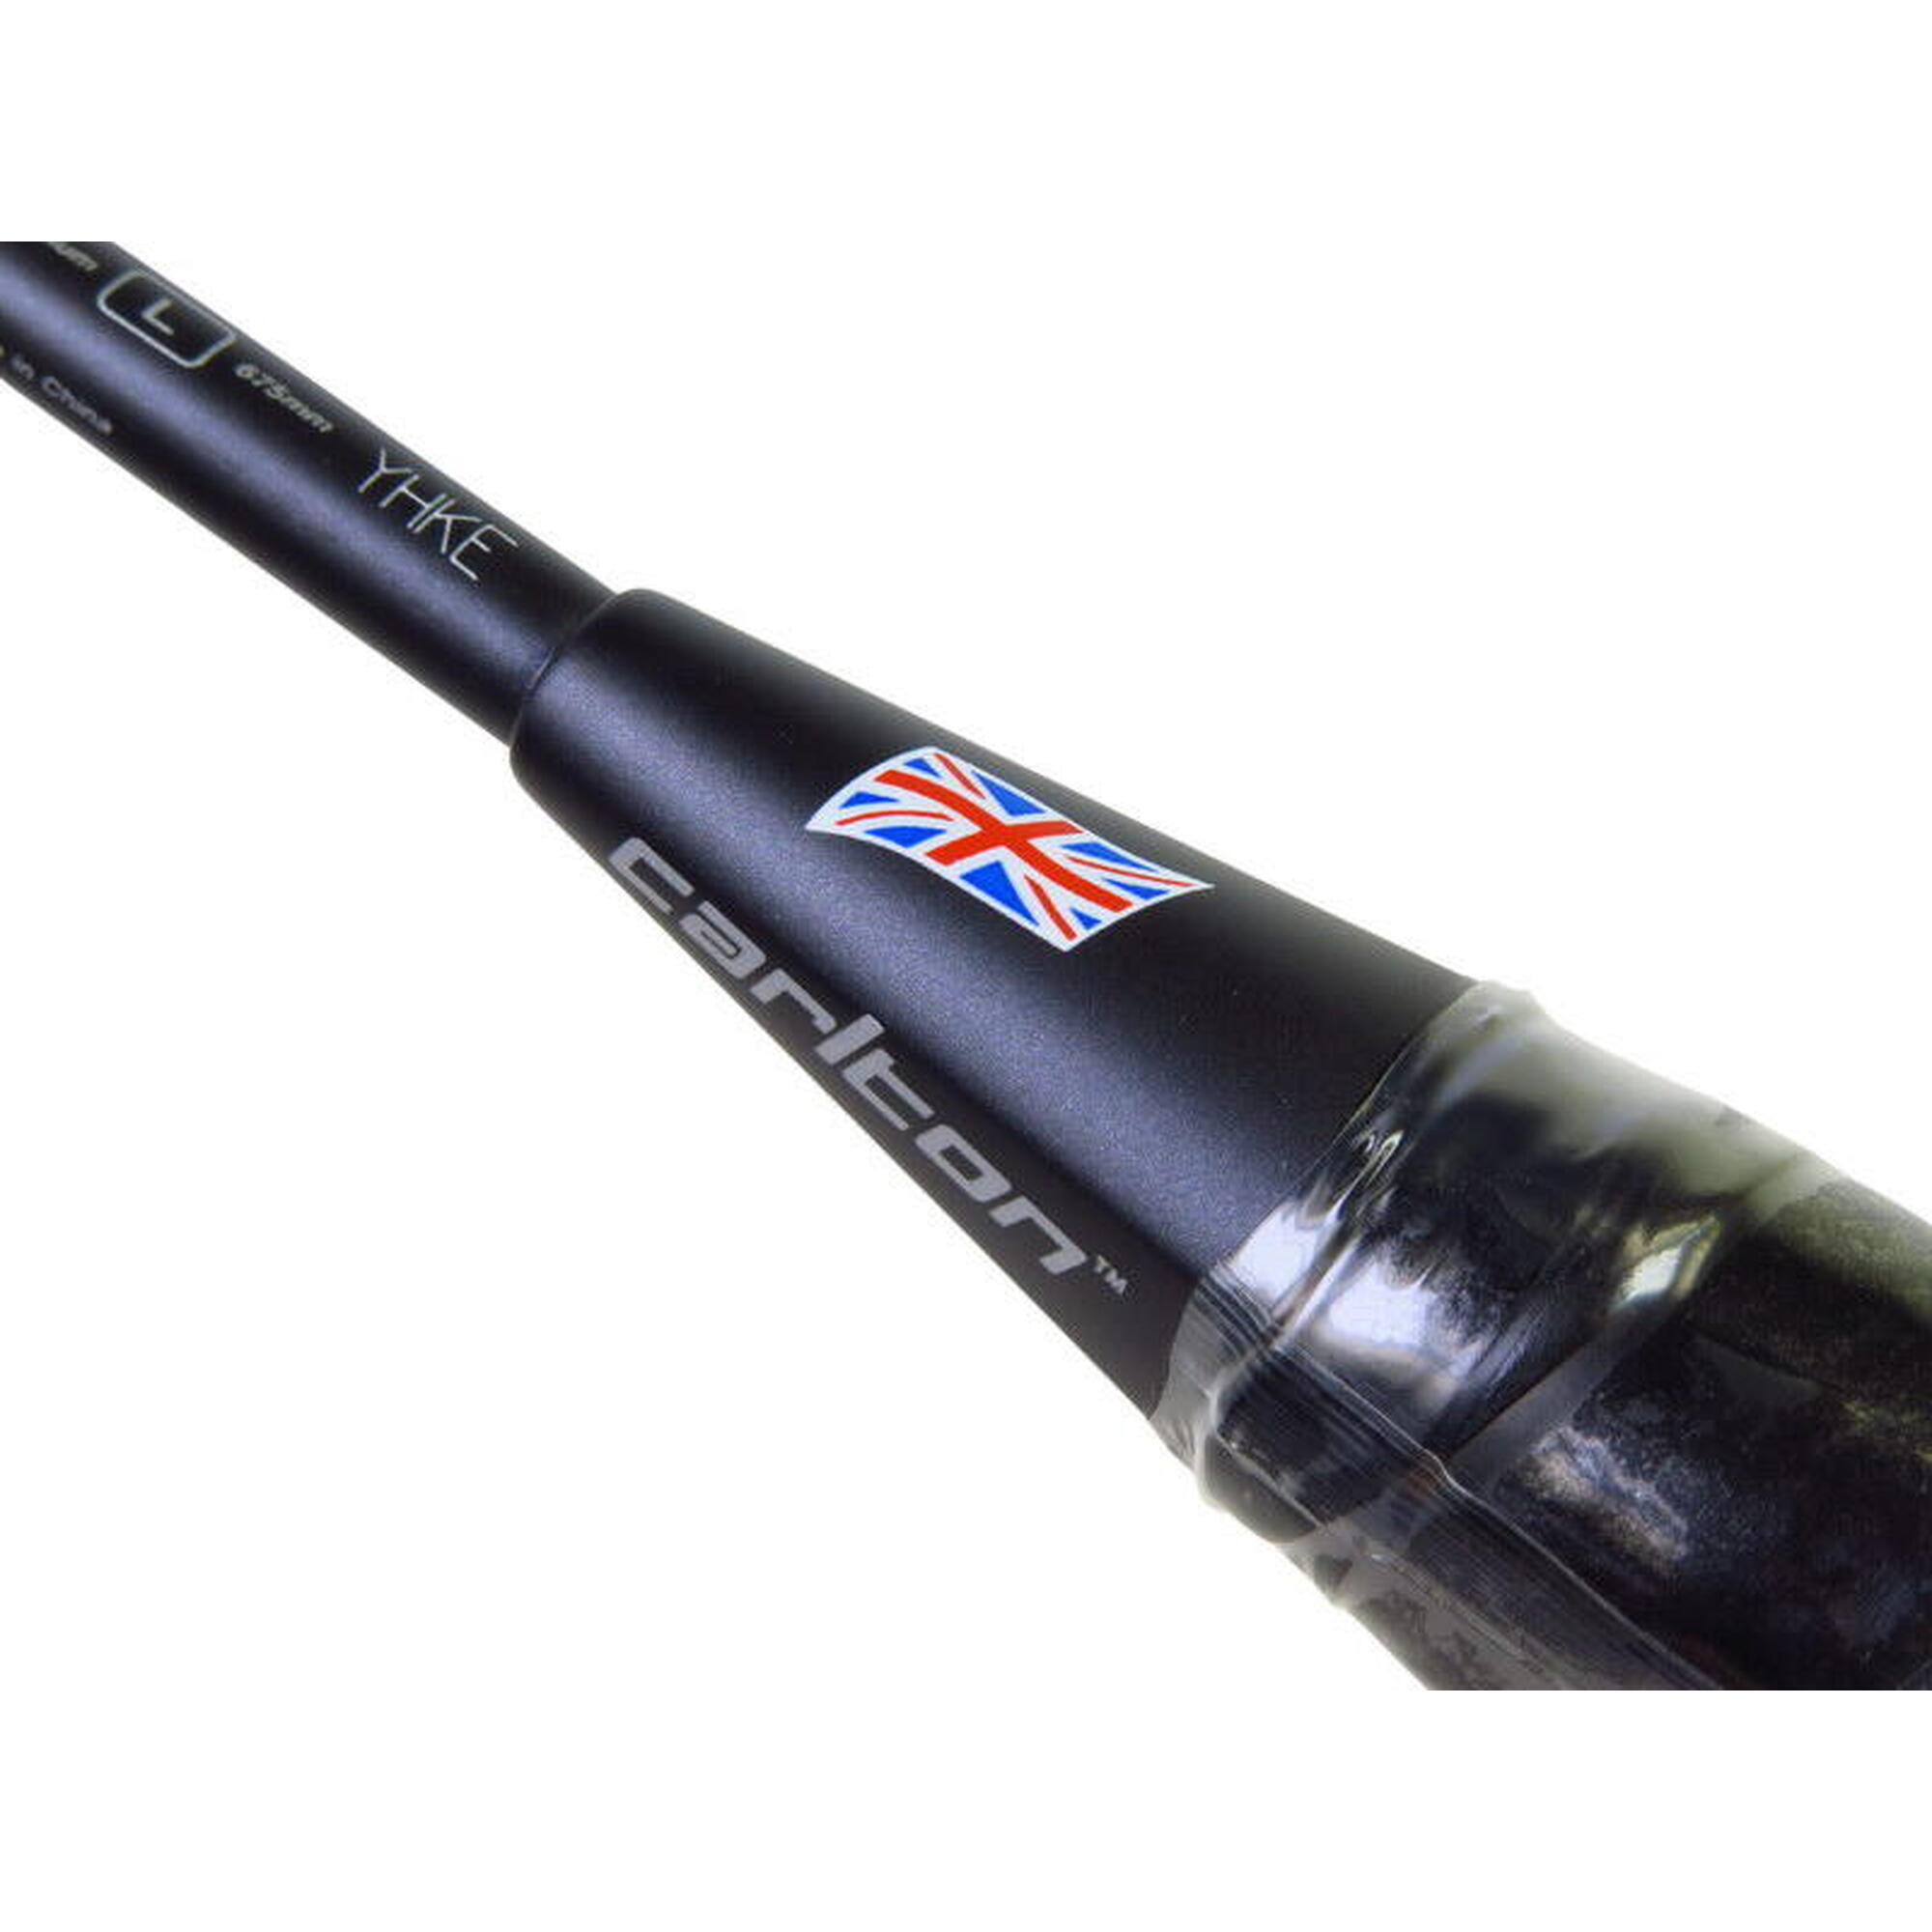 Fireblade 200 G6 HL 碳纖維羽毛球拍 (連線) - 黑色